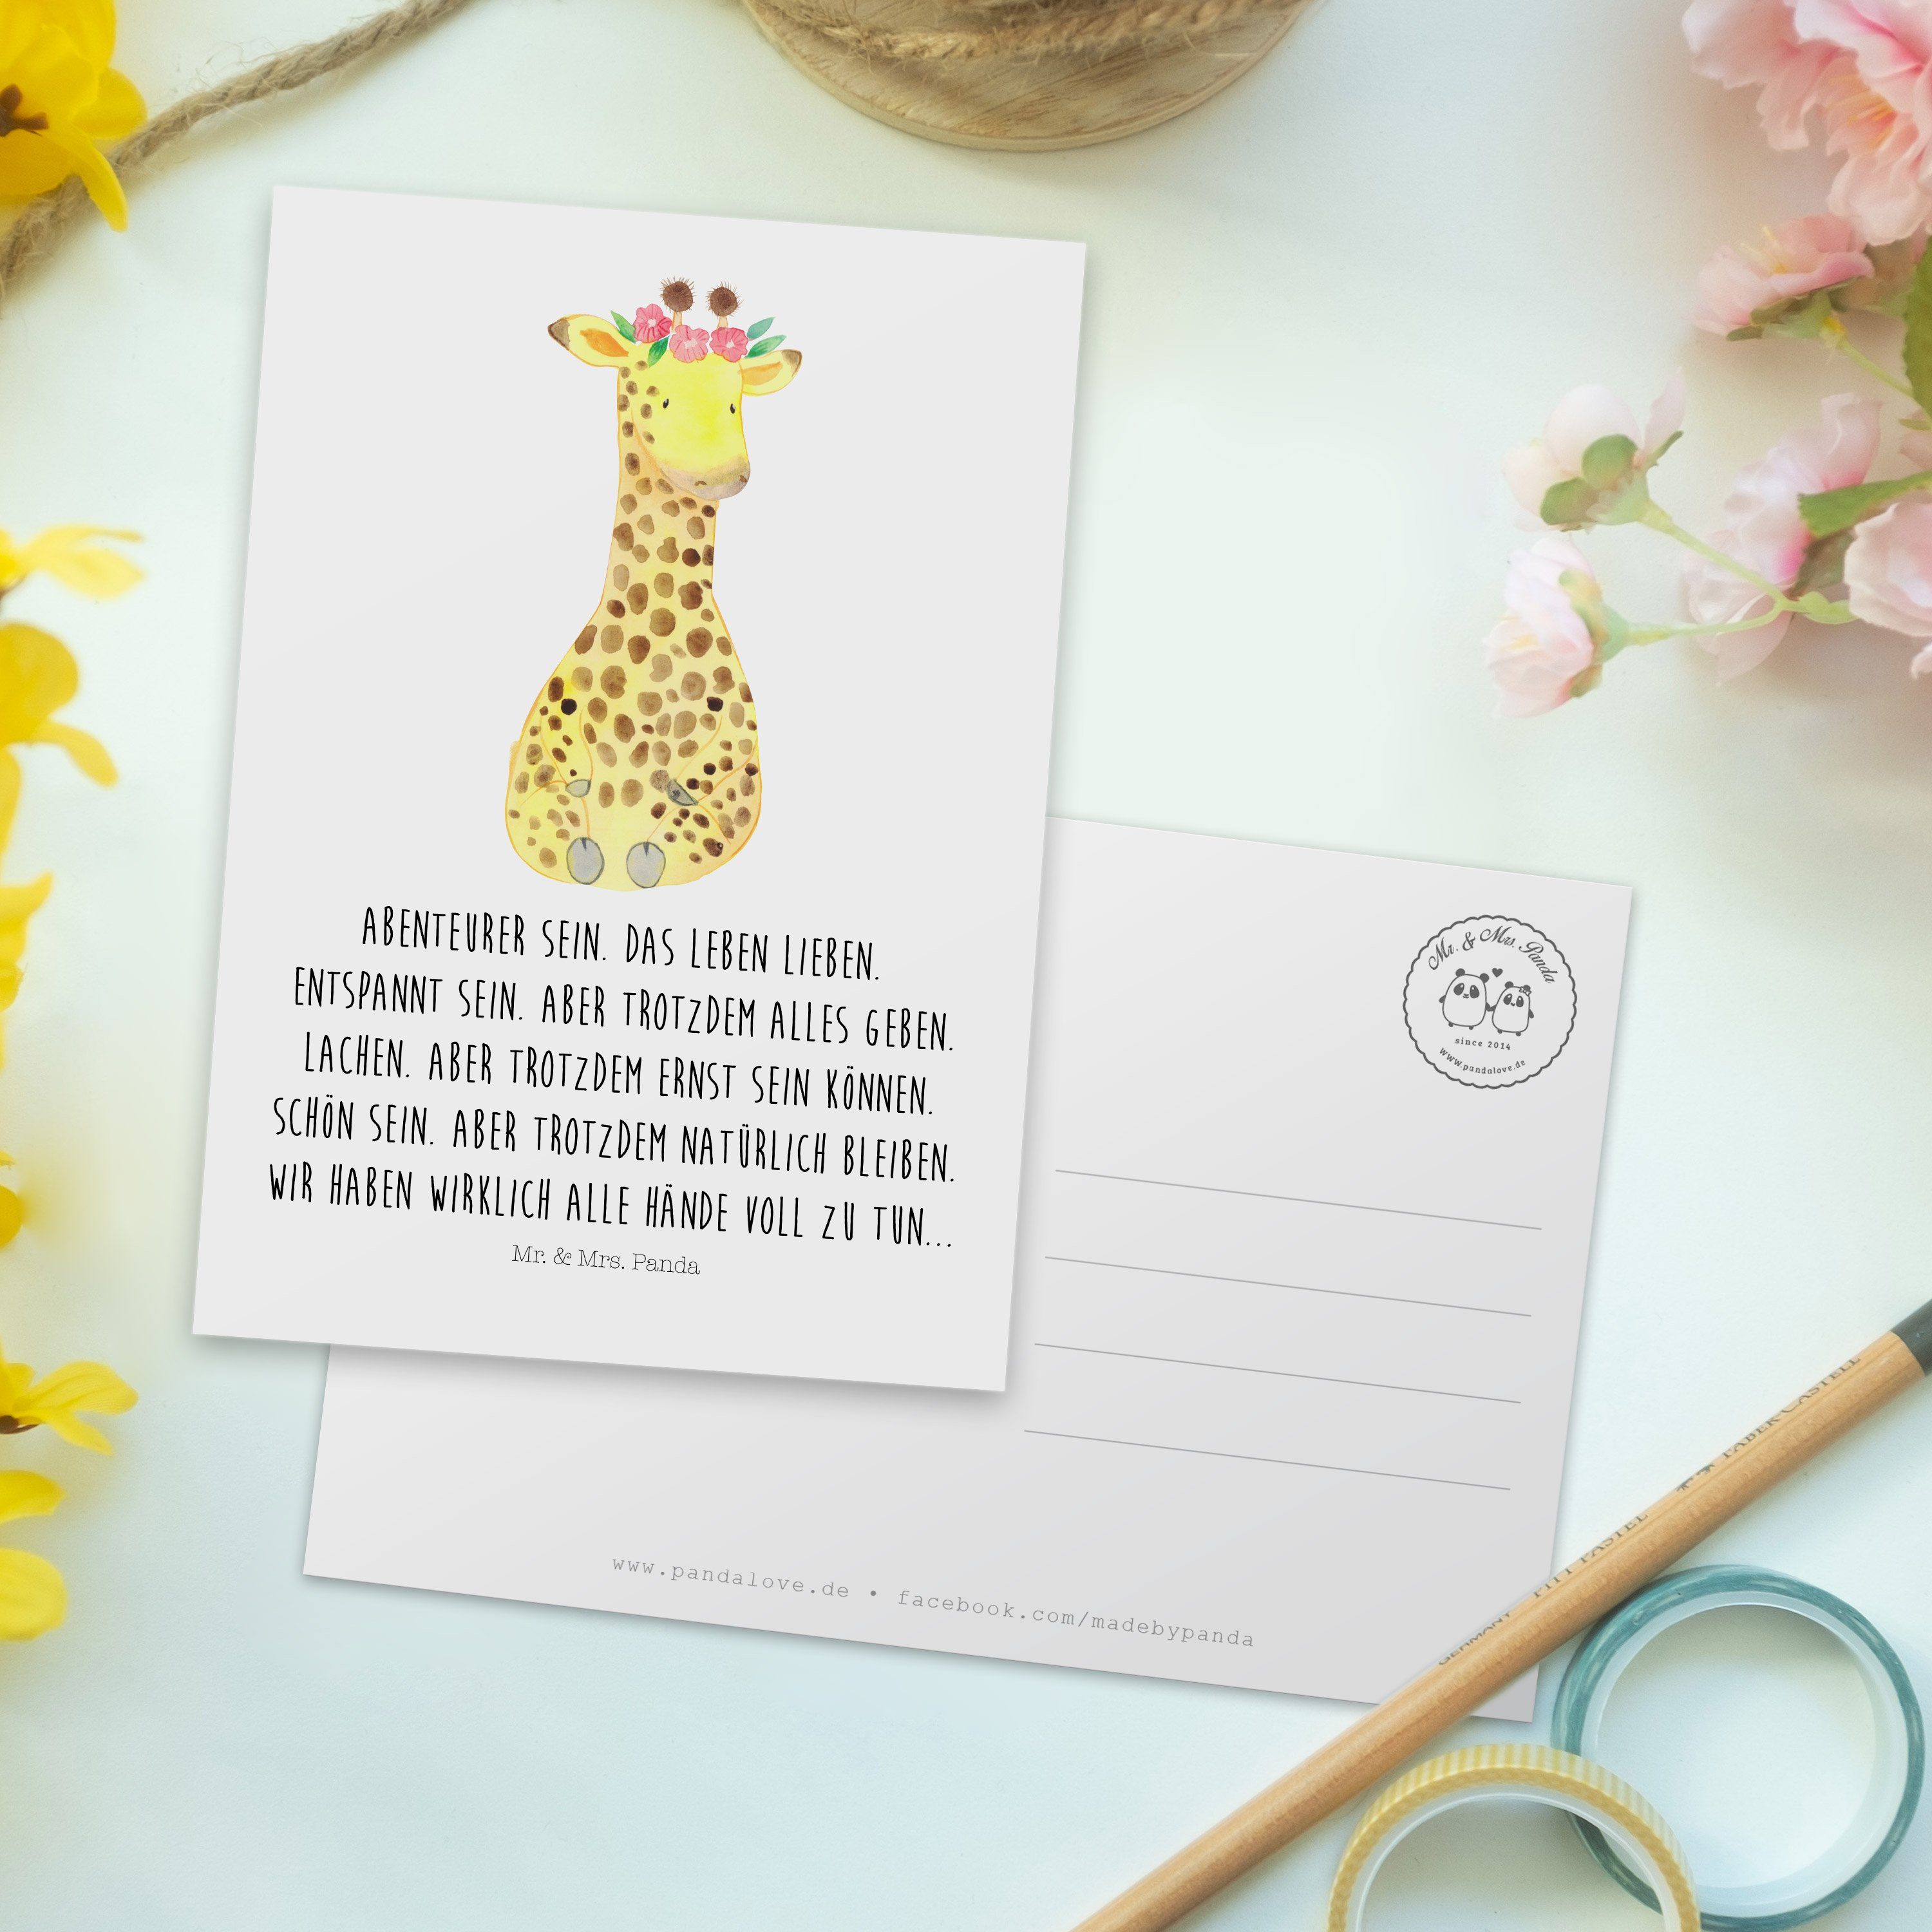 Mr. & Mrs. Panda Postkarte Weiß Giraffe Wildtiere, - Freundin, Einladung Geschenk, Blumenkranz 